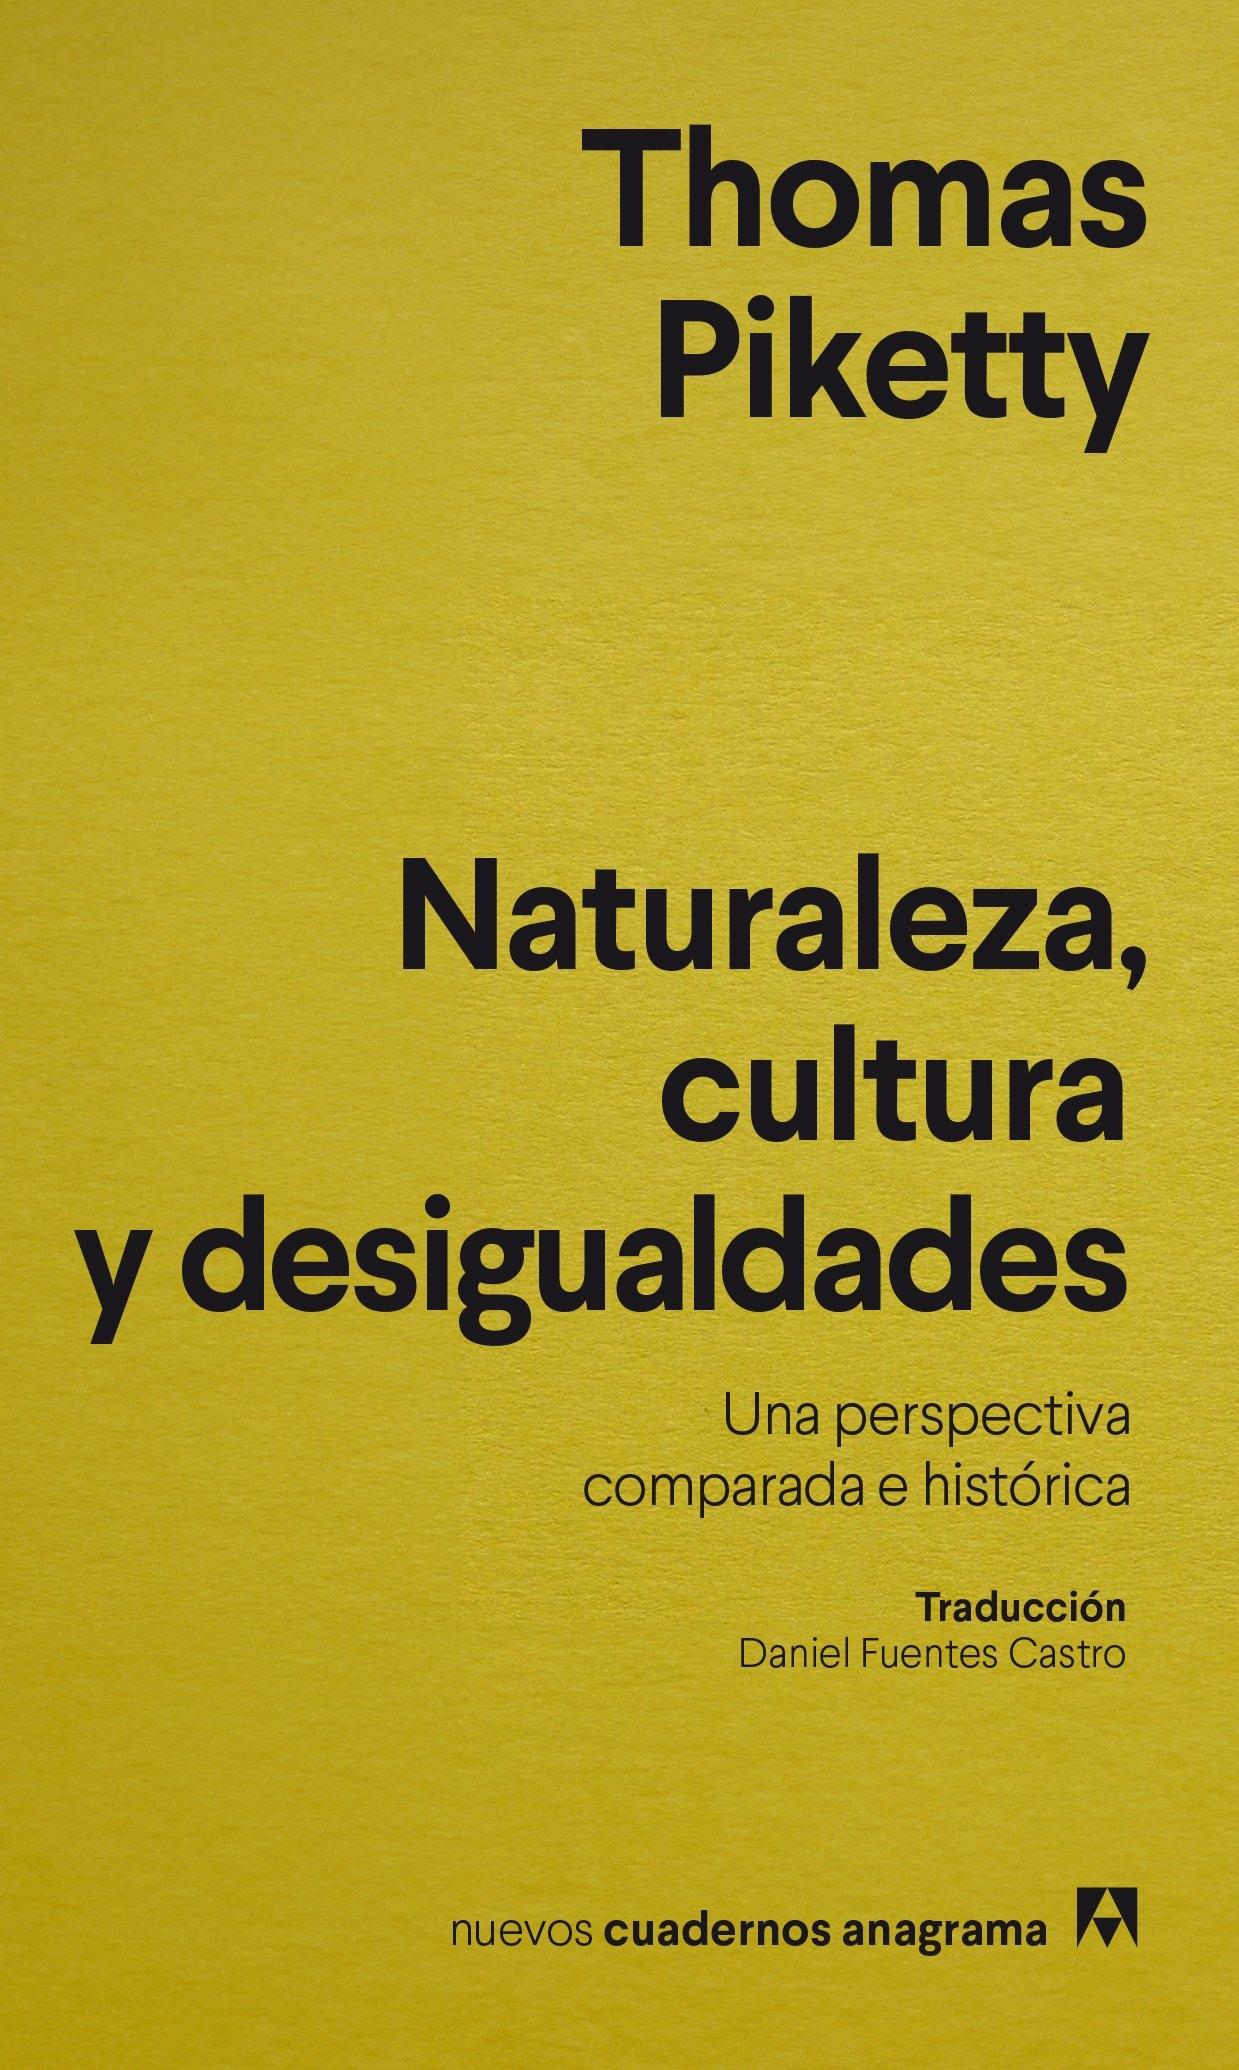 Naturaleza, Cultura y Desigualdades "Una Perspectiva Comparada e Histórica ". 